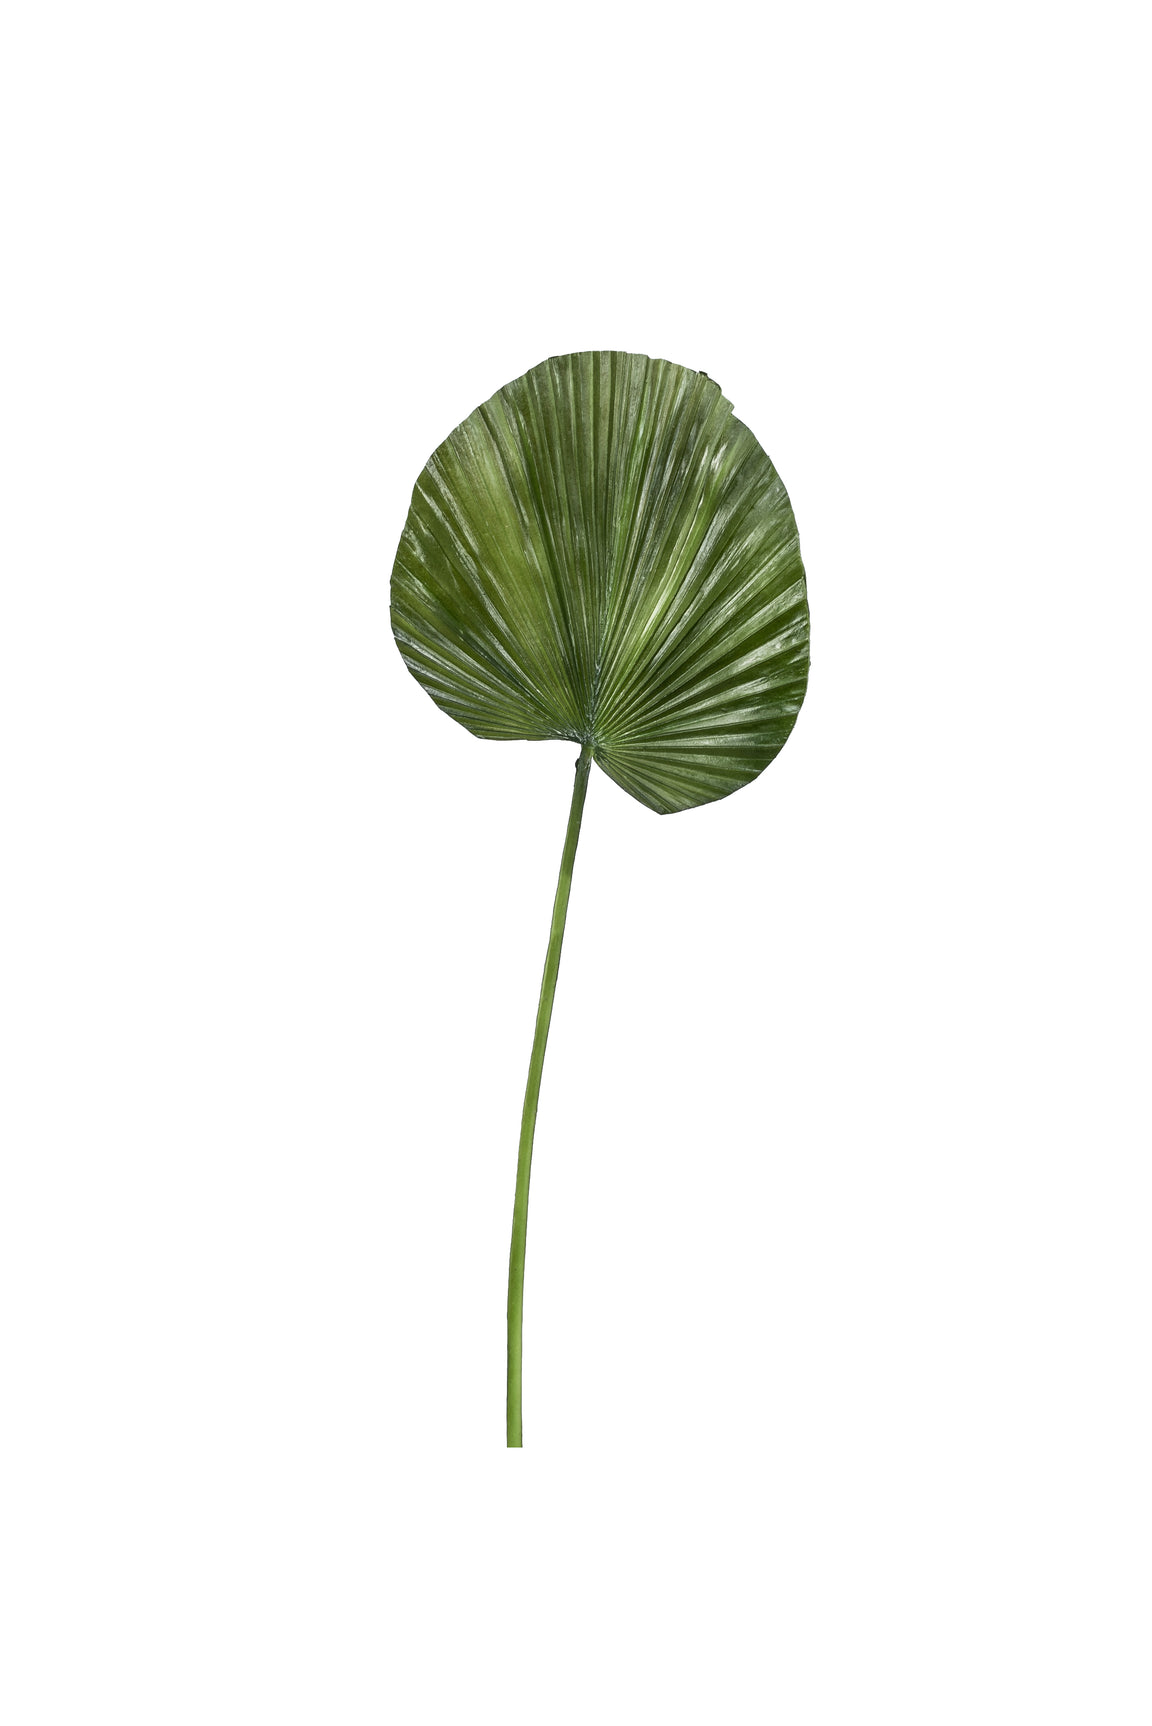 31" Small Fan Palm Leaf